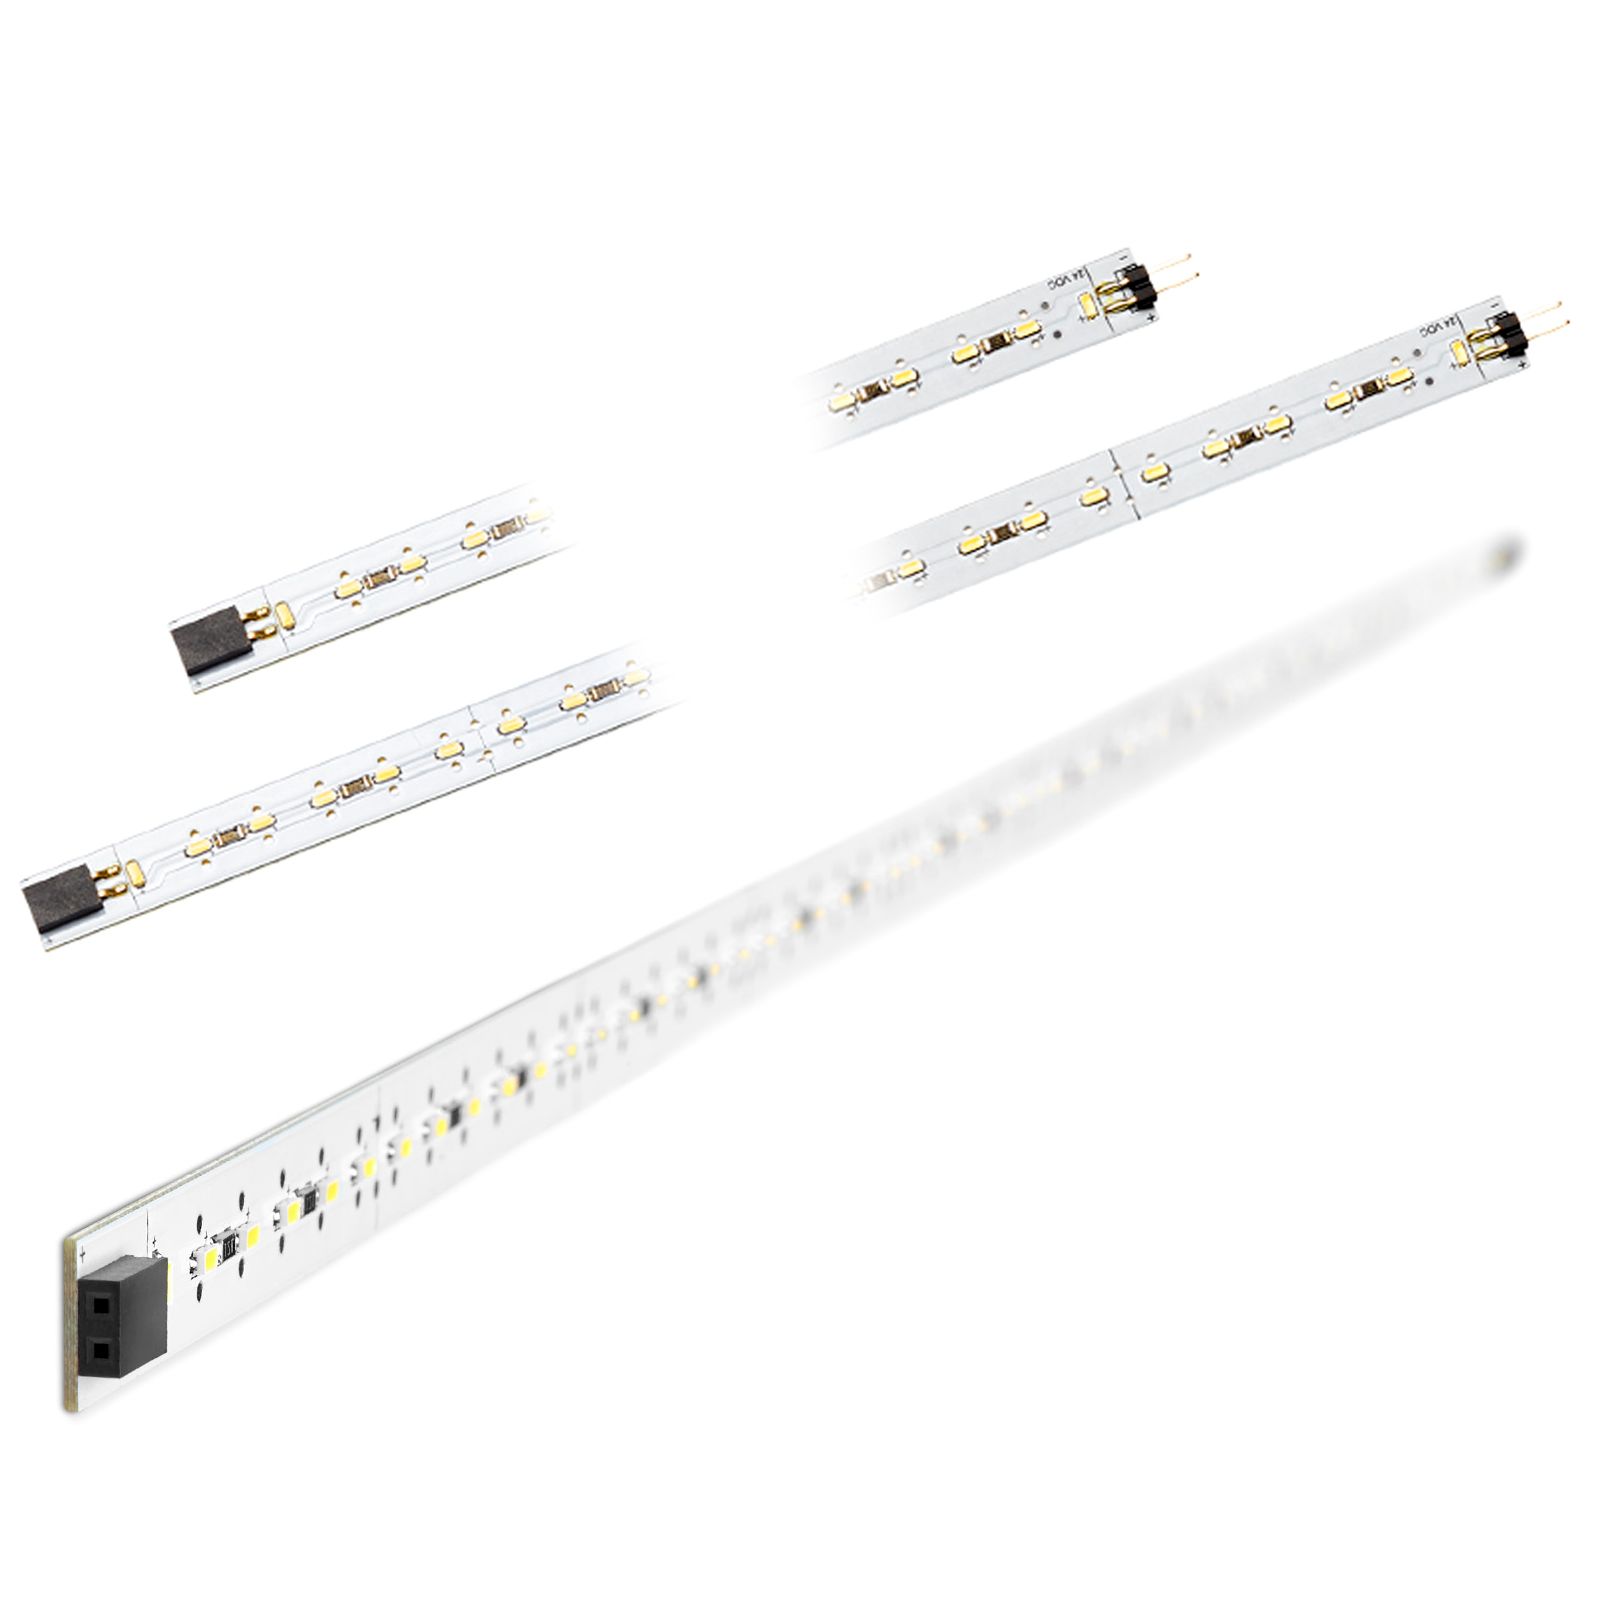 Schüco LED-Streifen neutralweiß 24V selbstklebend Lichtband Lichtleiste Stripes